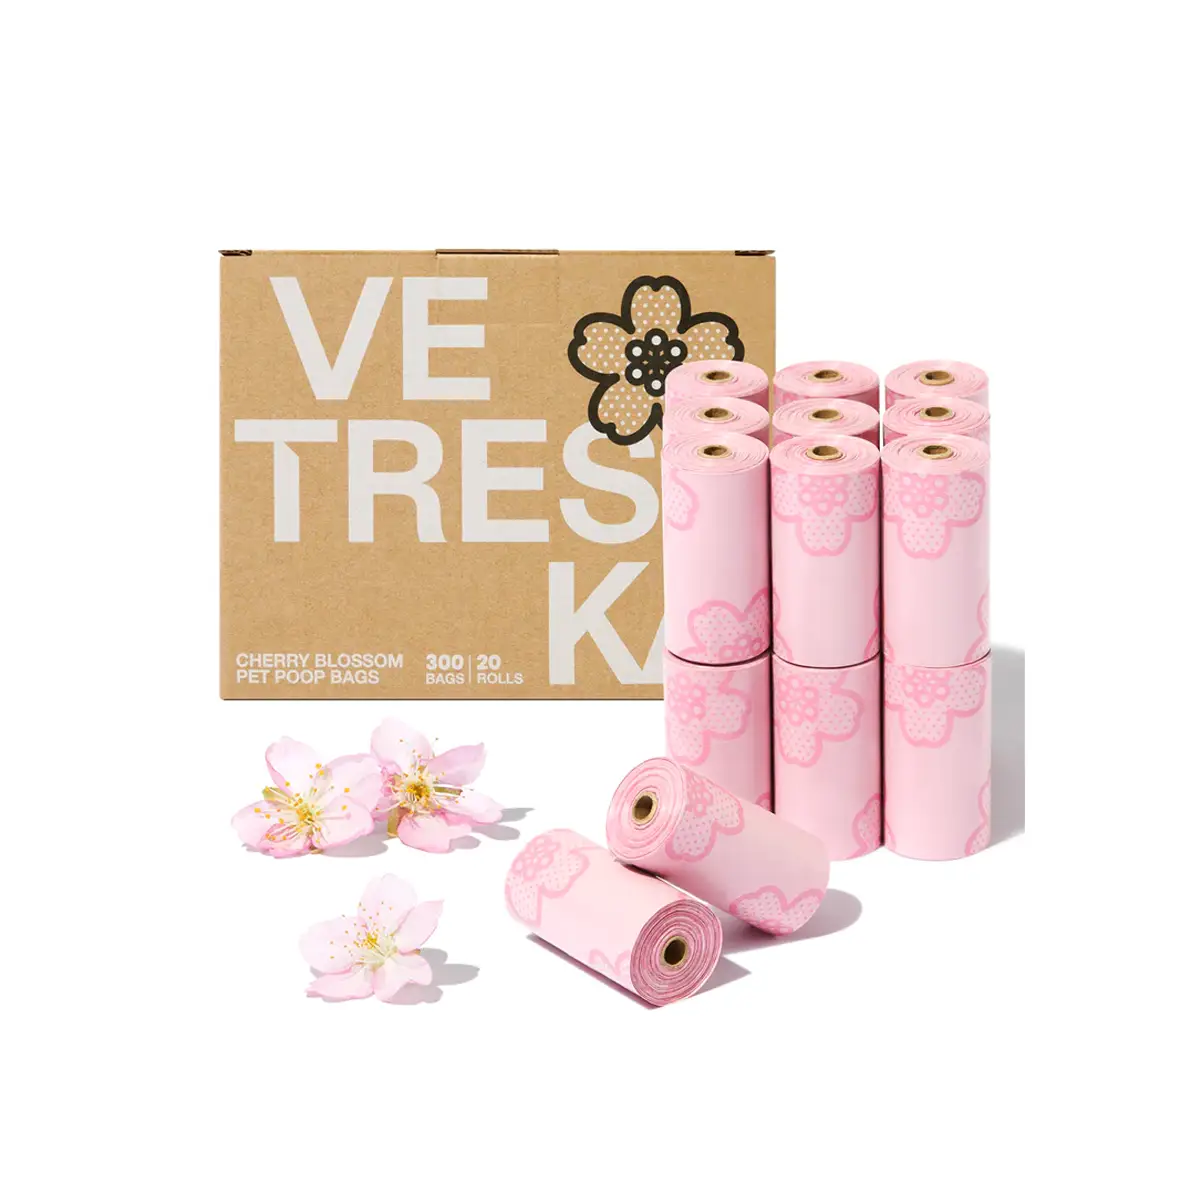 Vetreska - Cherry Blossom Pet Poop Bags Refill Set (20 Rolls)